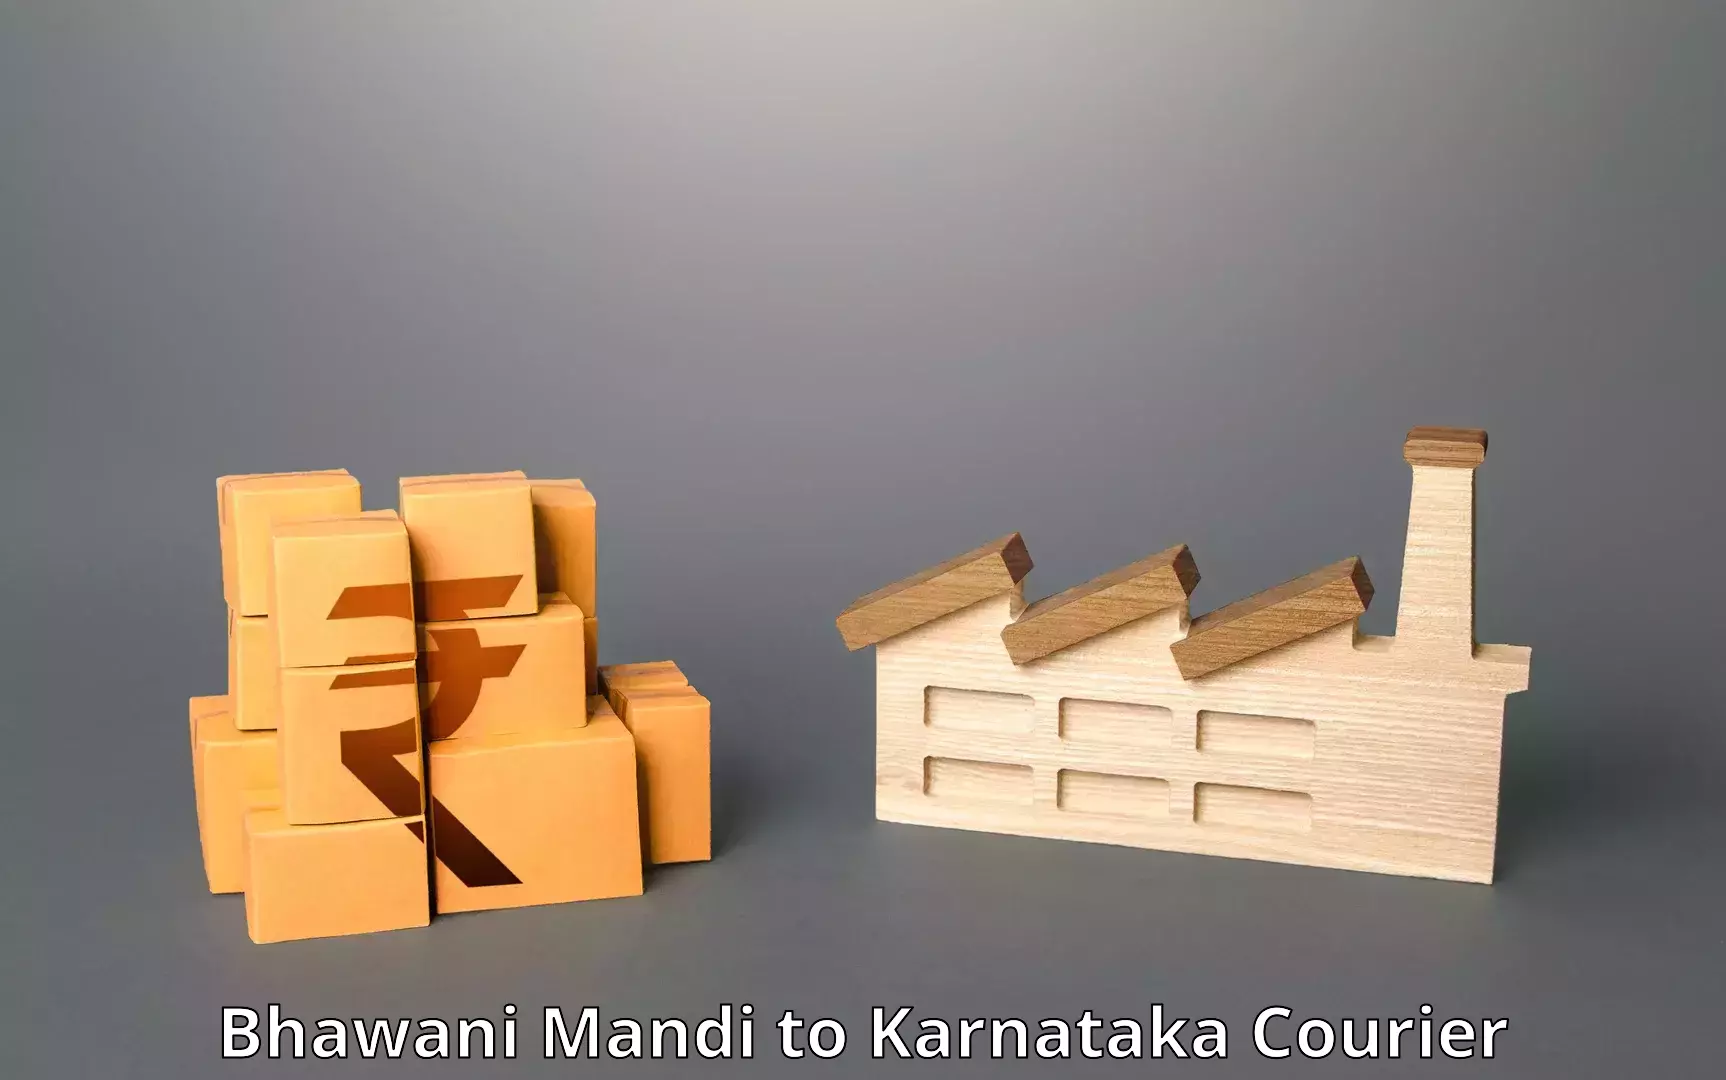 Seamless shipping service Bhawani Mandi to Karnataka